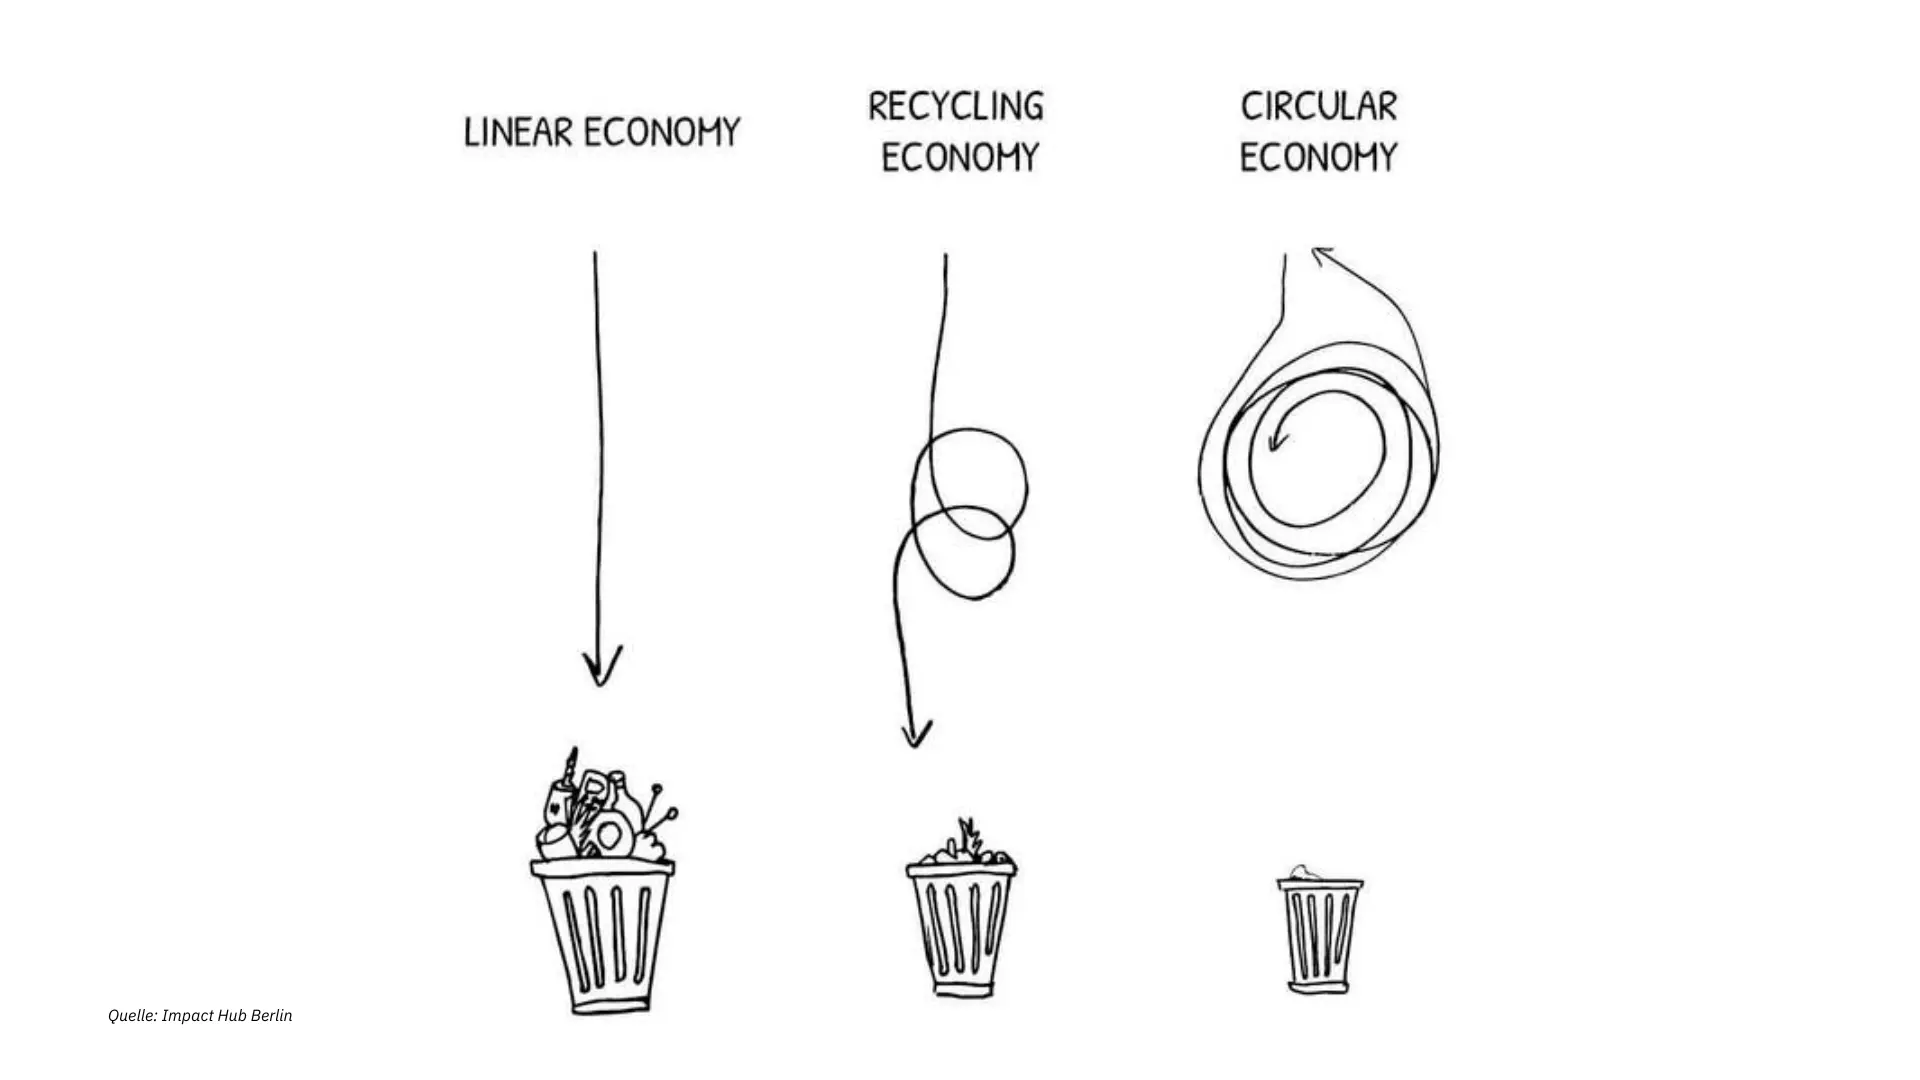 Illustration, die Linear Economy, Recycling Economy und Circular Economy gegenüberstellt. Linear Economy führt direkt zur Mülltonne, bei Recycling Economy ist noch ein kleiner Umweg drin und bei Circular Economy dreht sich der Produktlebenszyklus im Kreis; es landet nichts im Müll